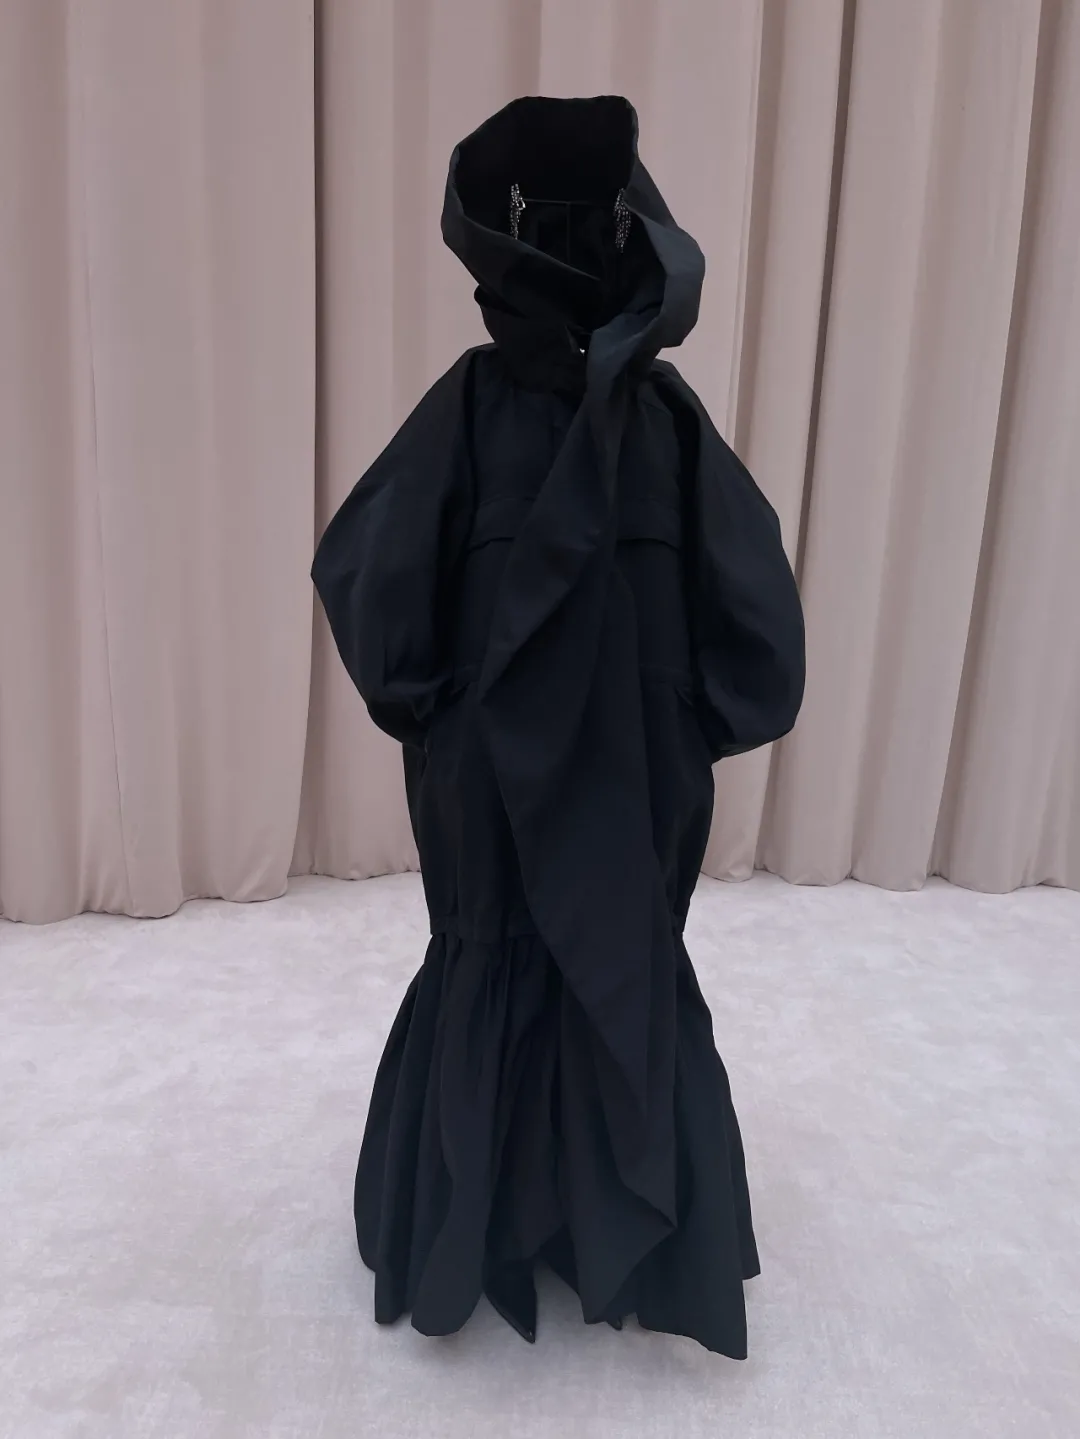 加拿大歌手贾斯汀·比伯再度出镜巴黎世家时尚大片